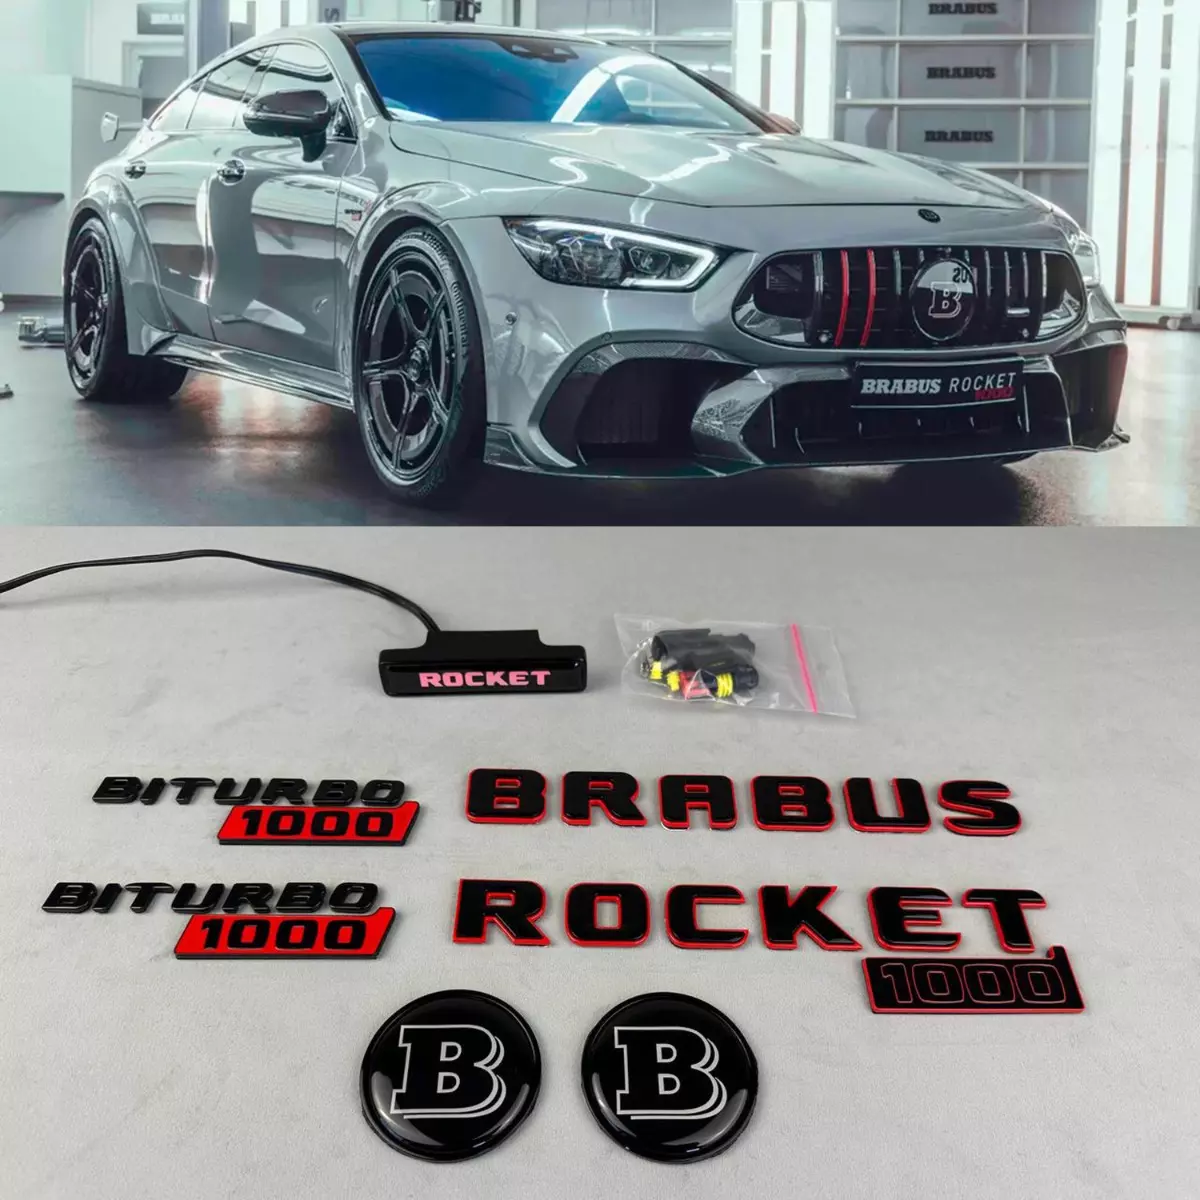 Brabus Rocket 1000 “1 of 25” Biturbo 1000 Emblems Set Red and Black for Mercedes-Benz GT 2024